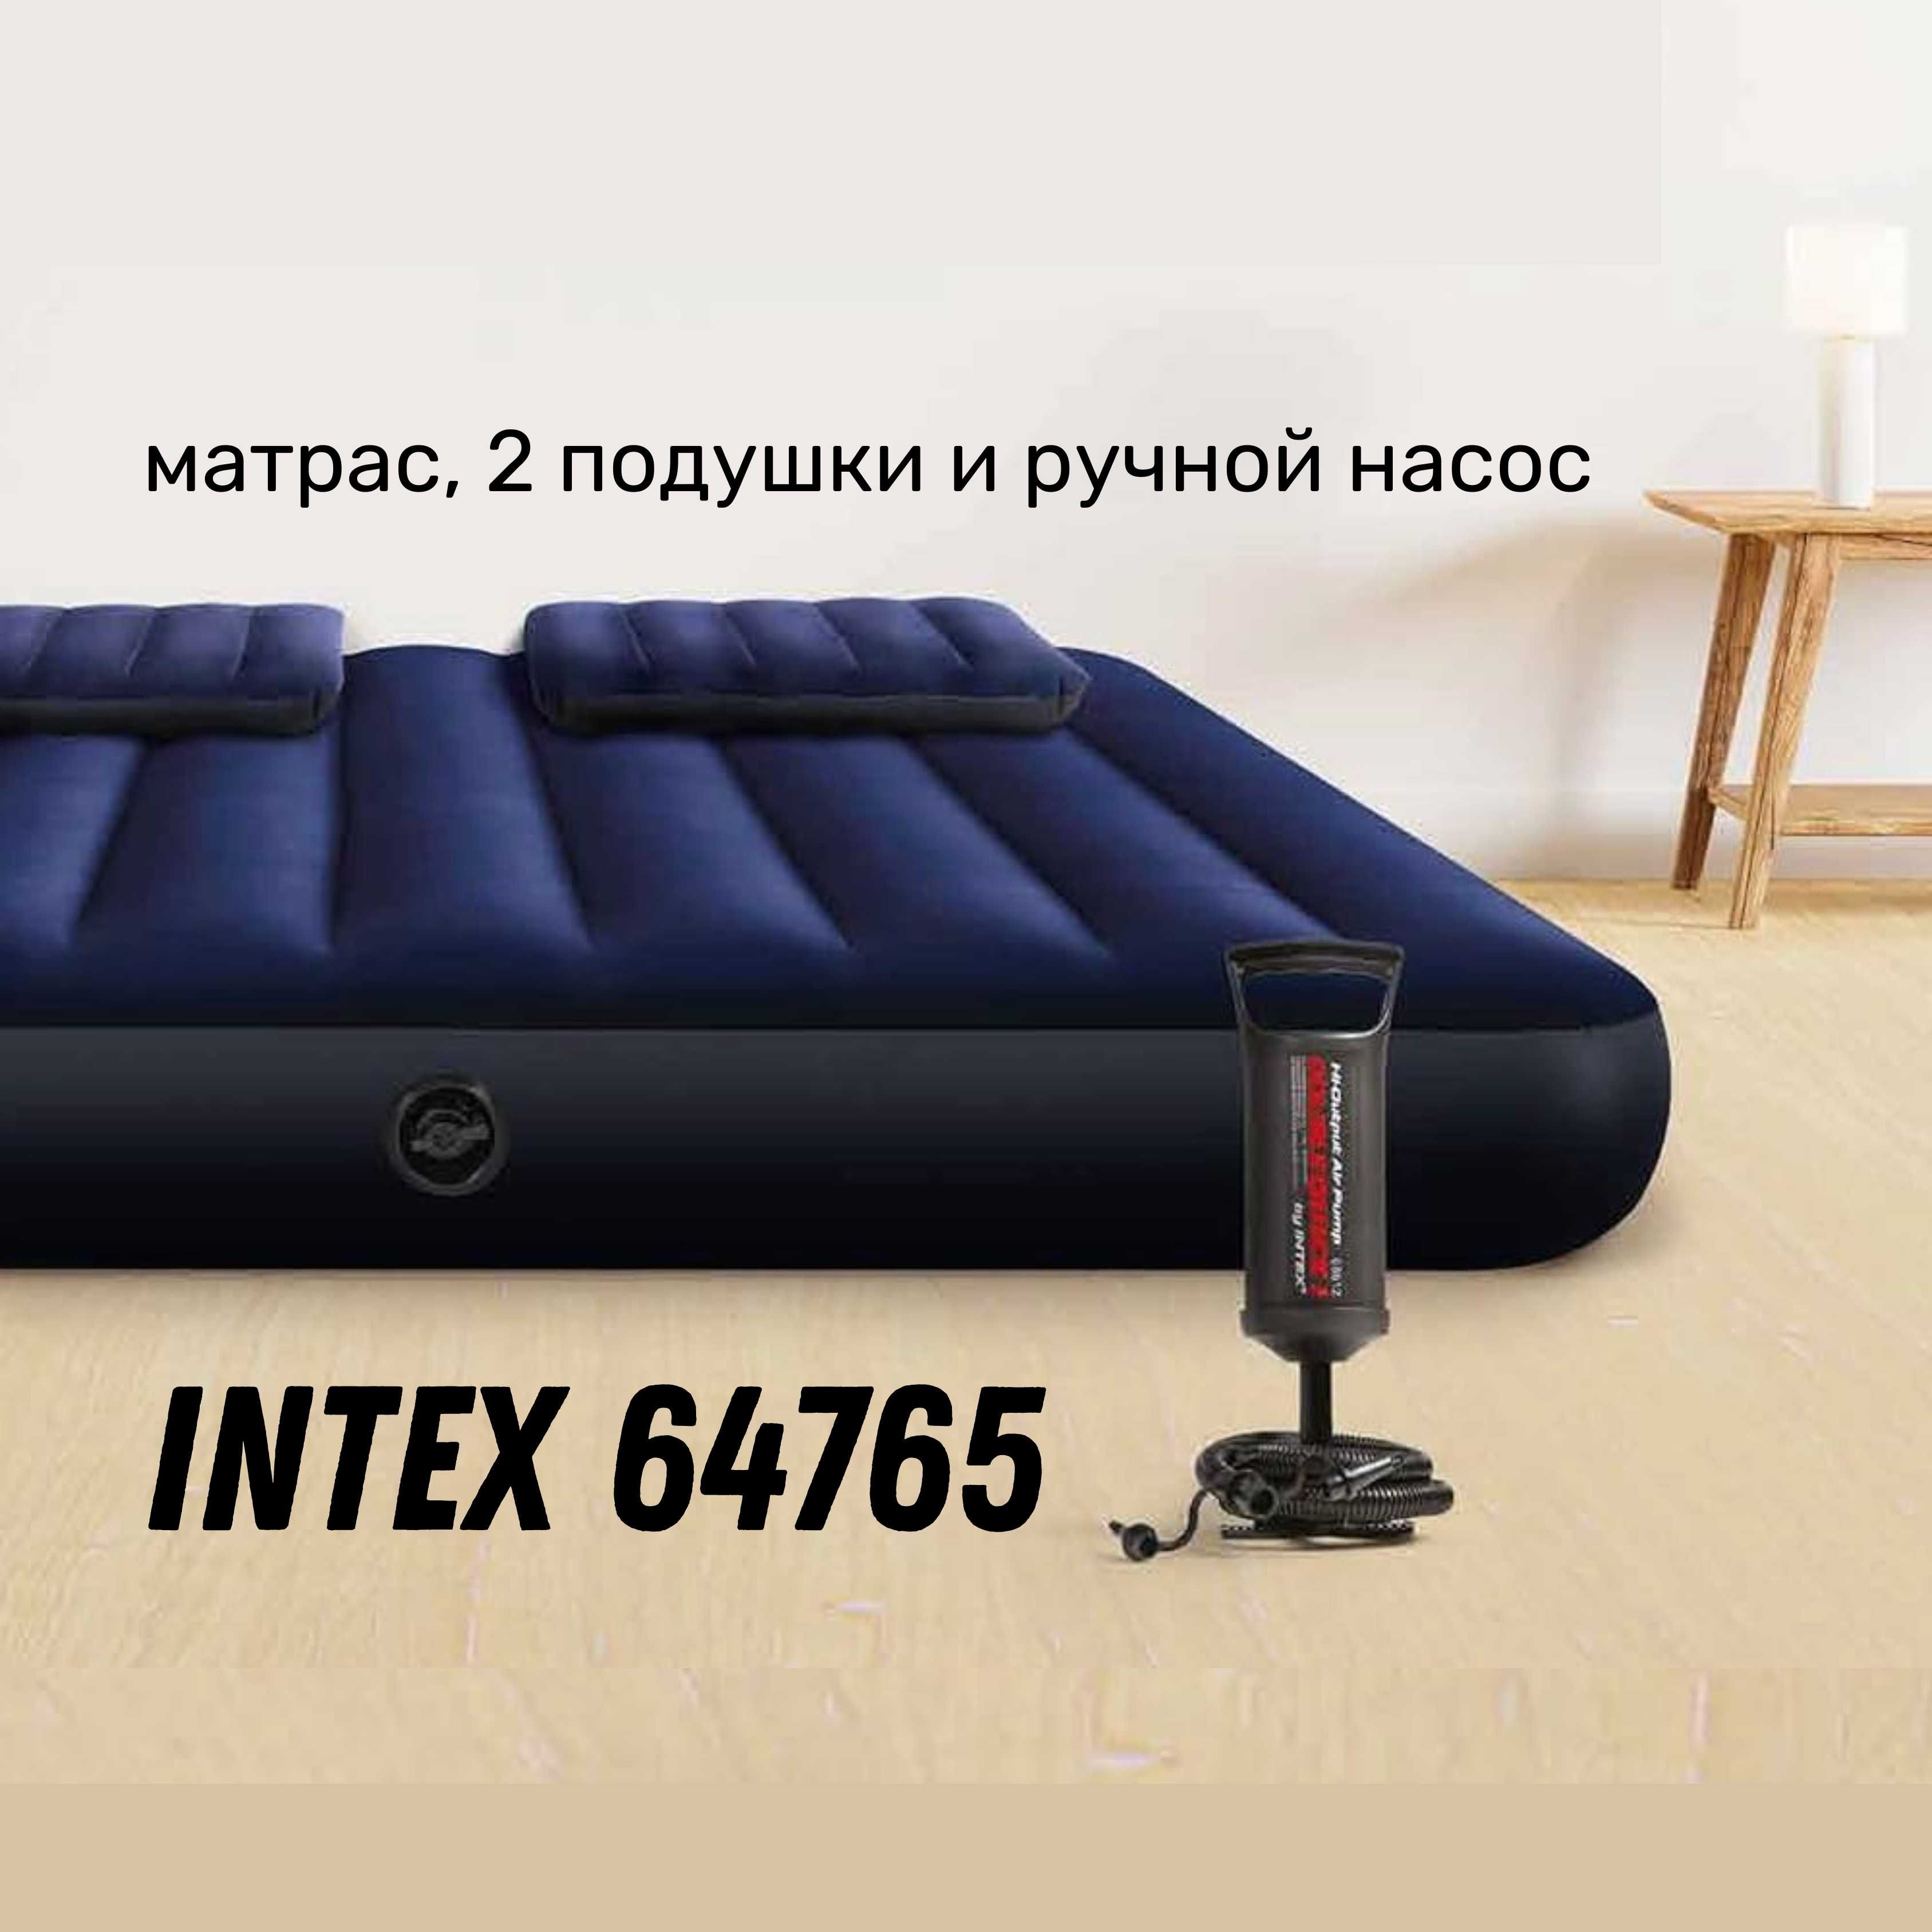 Новый надувной матрас Intex Classic 64765  с насосом и подушками